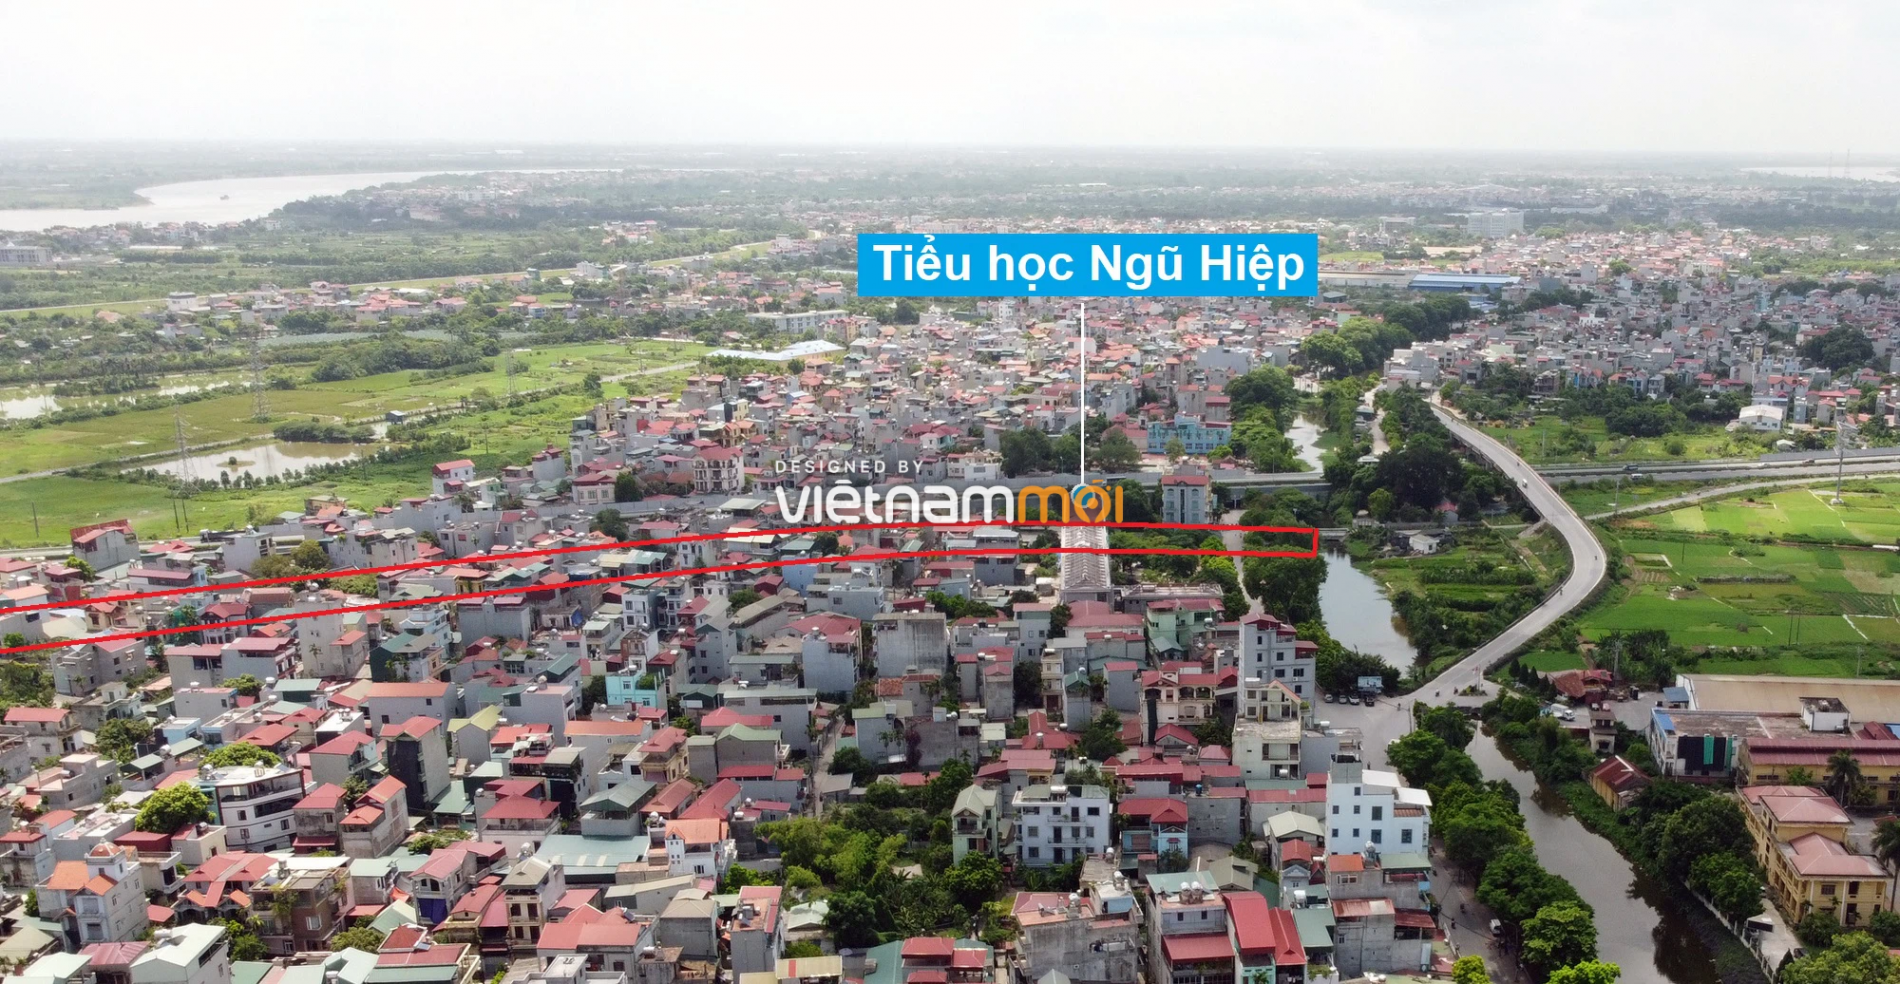 Những khu đất sắp thu hồi để mở đường ở xã Ngũ Hiệp, Thanh Trì, Hà Nội (phần 2) - Ảnh 5.